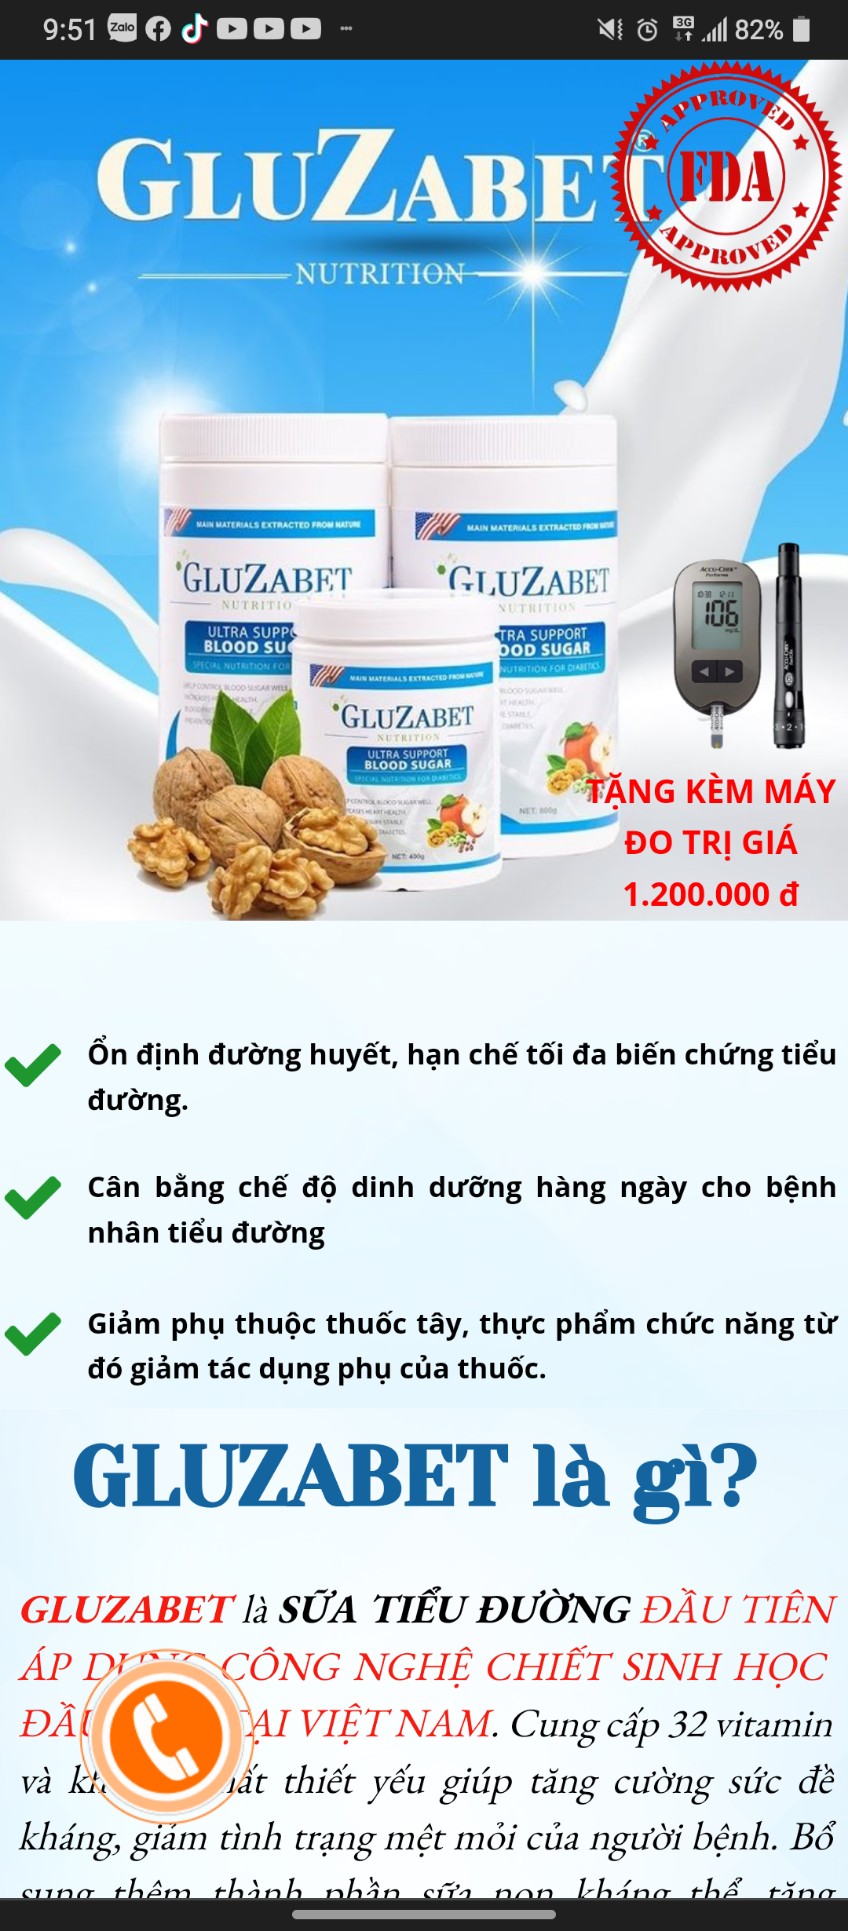 Sữa non tiểu đường Gluzabet đang được quảng cáo như thuốc chữa bệnh?